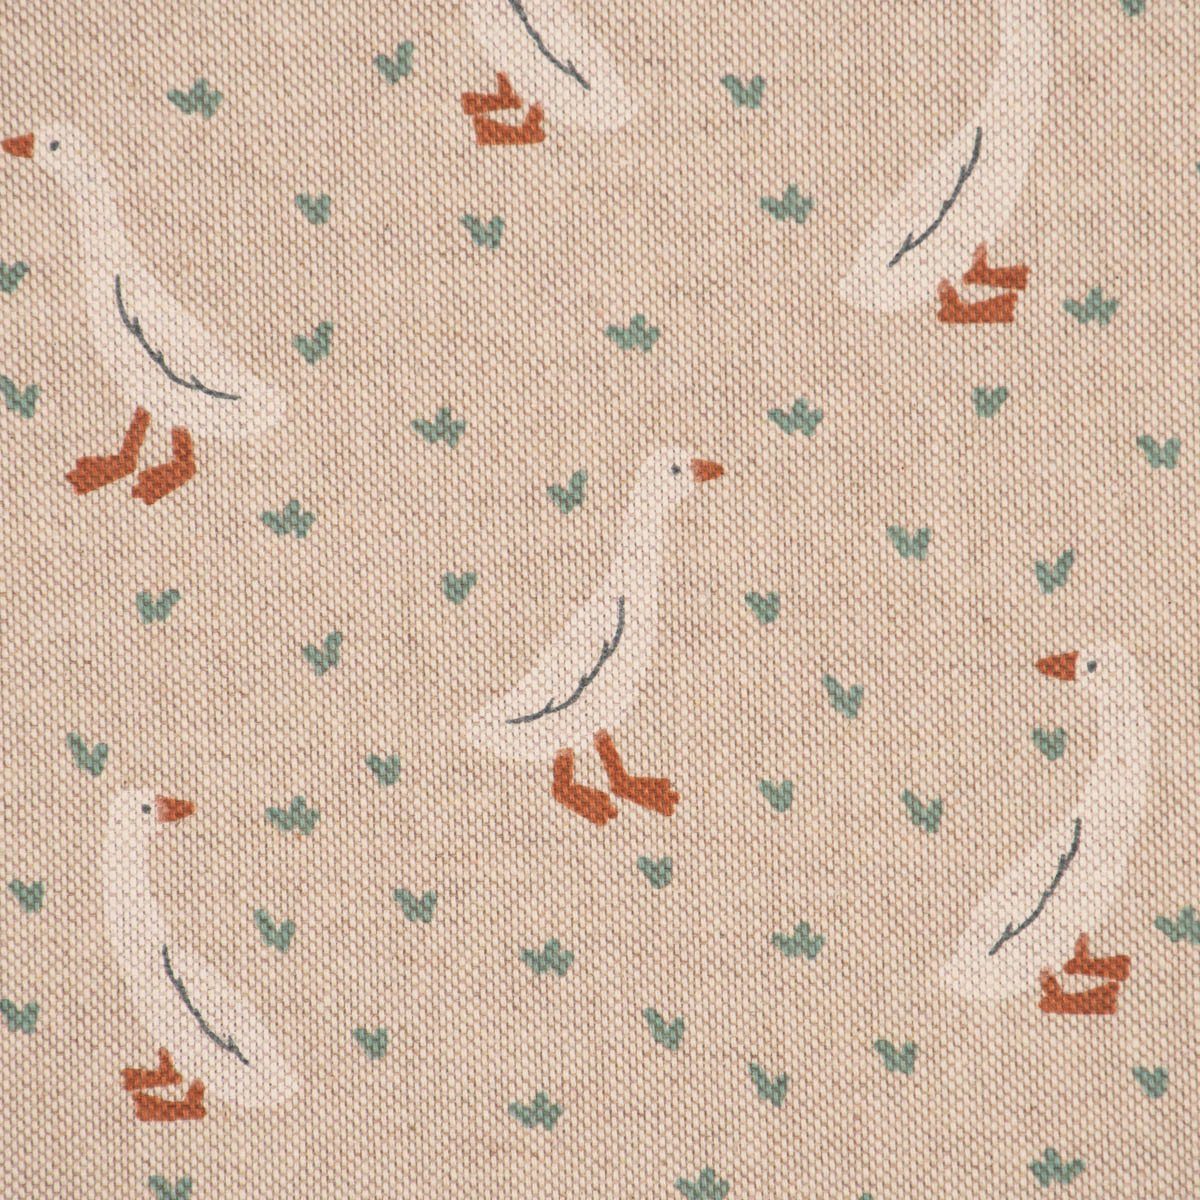 SCHÖNER LEBEN. Tischläufer SCHÖNER Iconic Garden Goose LEBEN. natur Gänse Tischläufer handmade mint, weiß